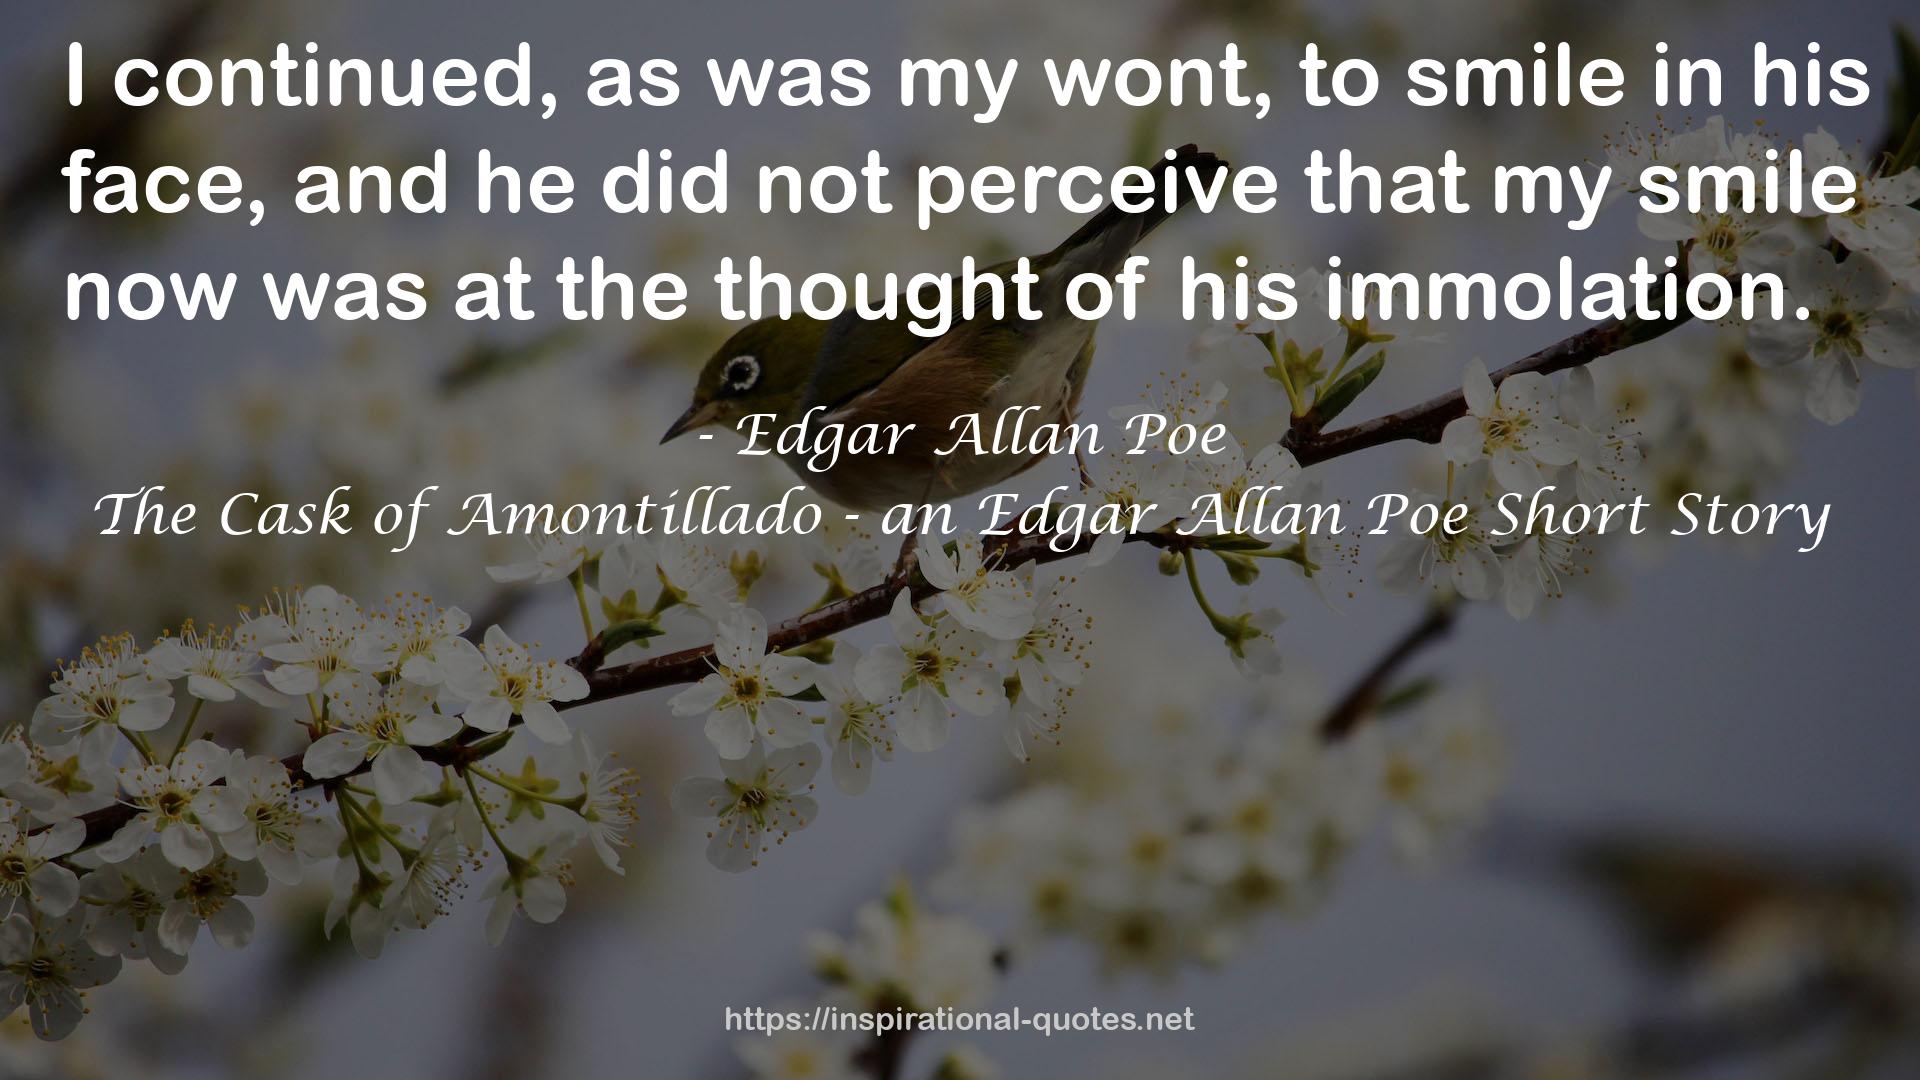 The Cask of Amontillado - an Edgar Allan Poe Short Story QUOTES